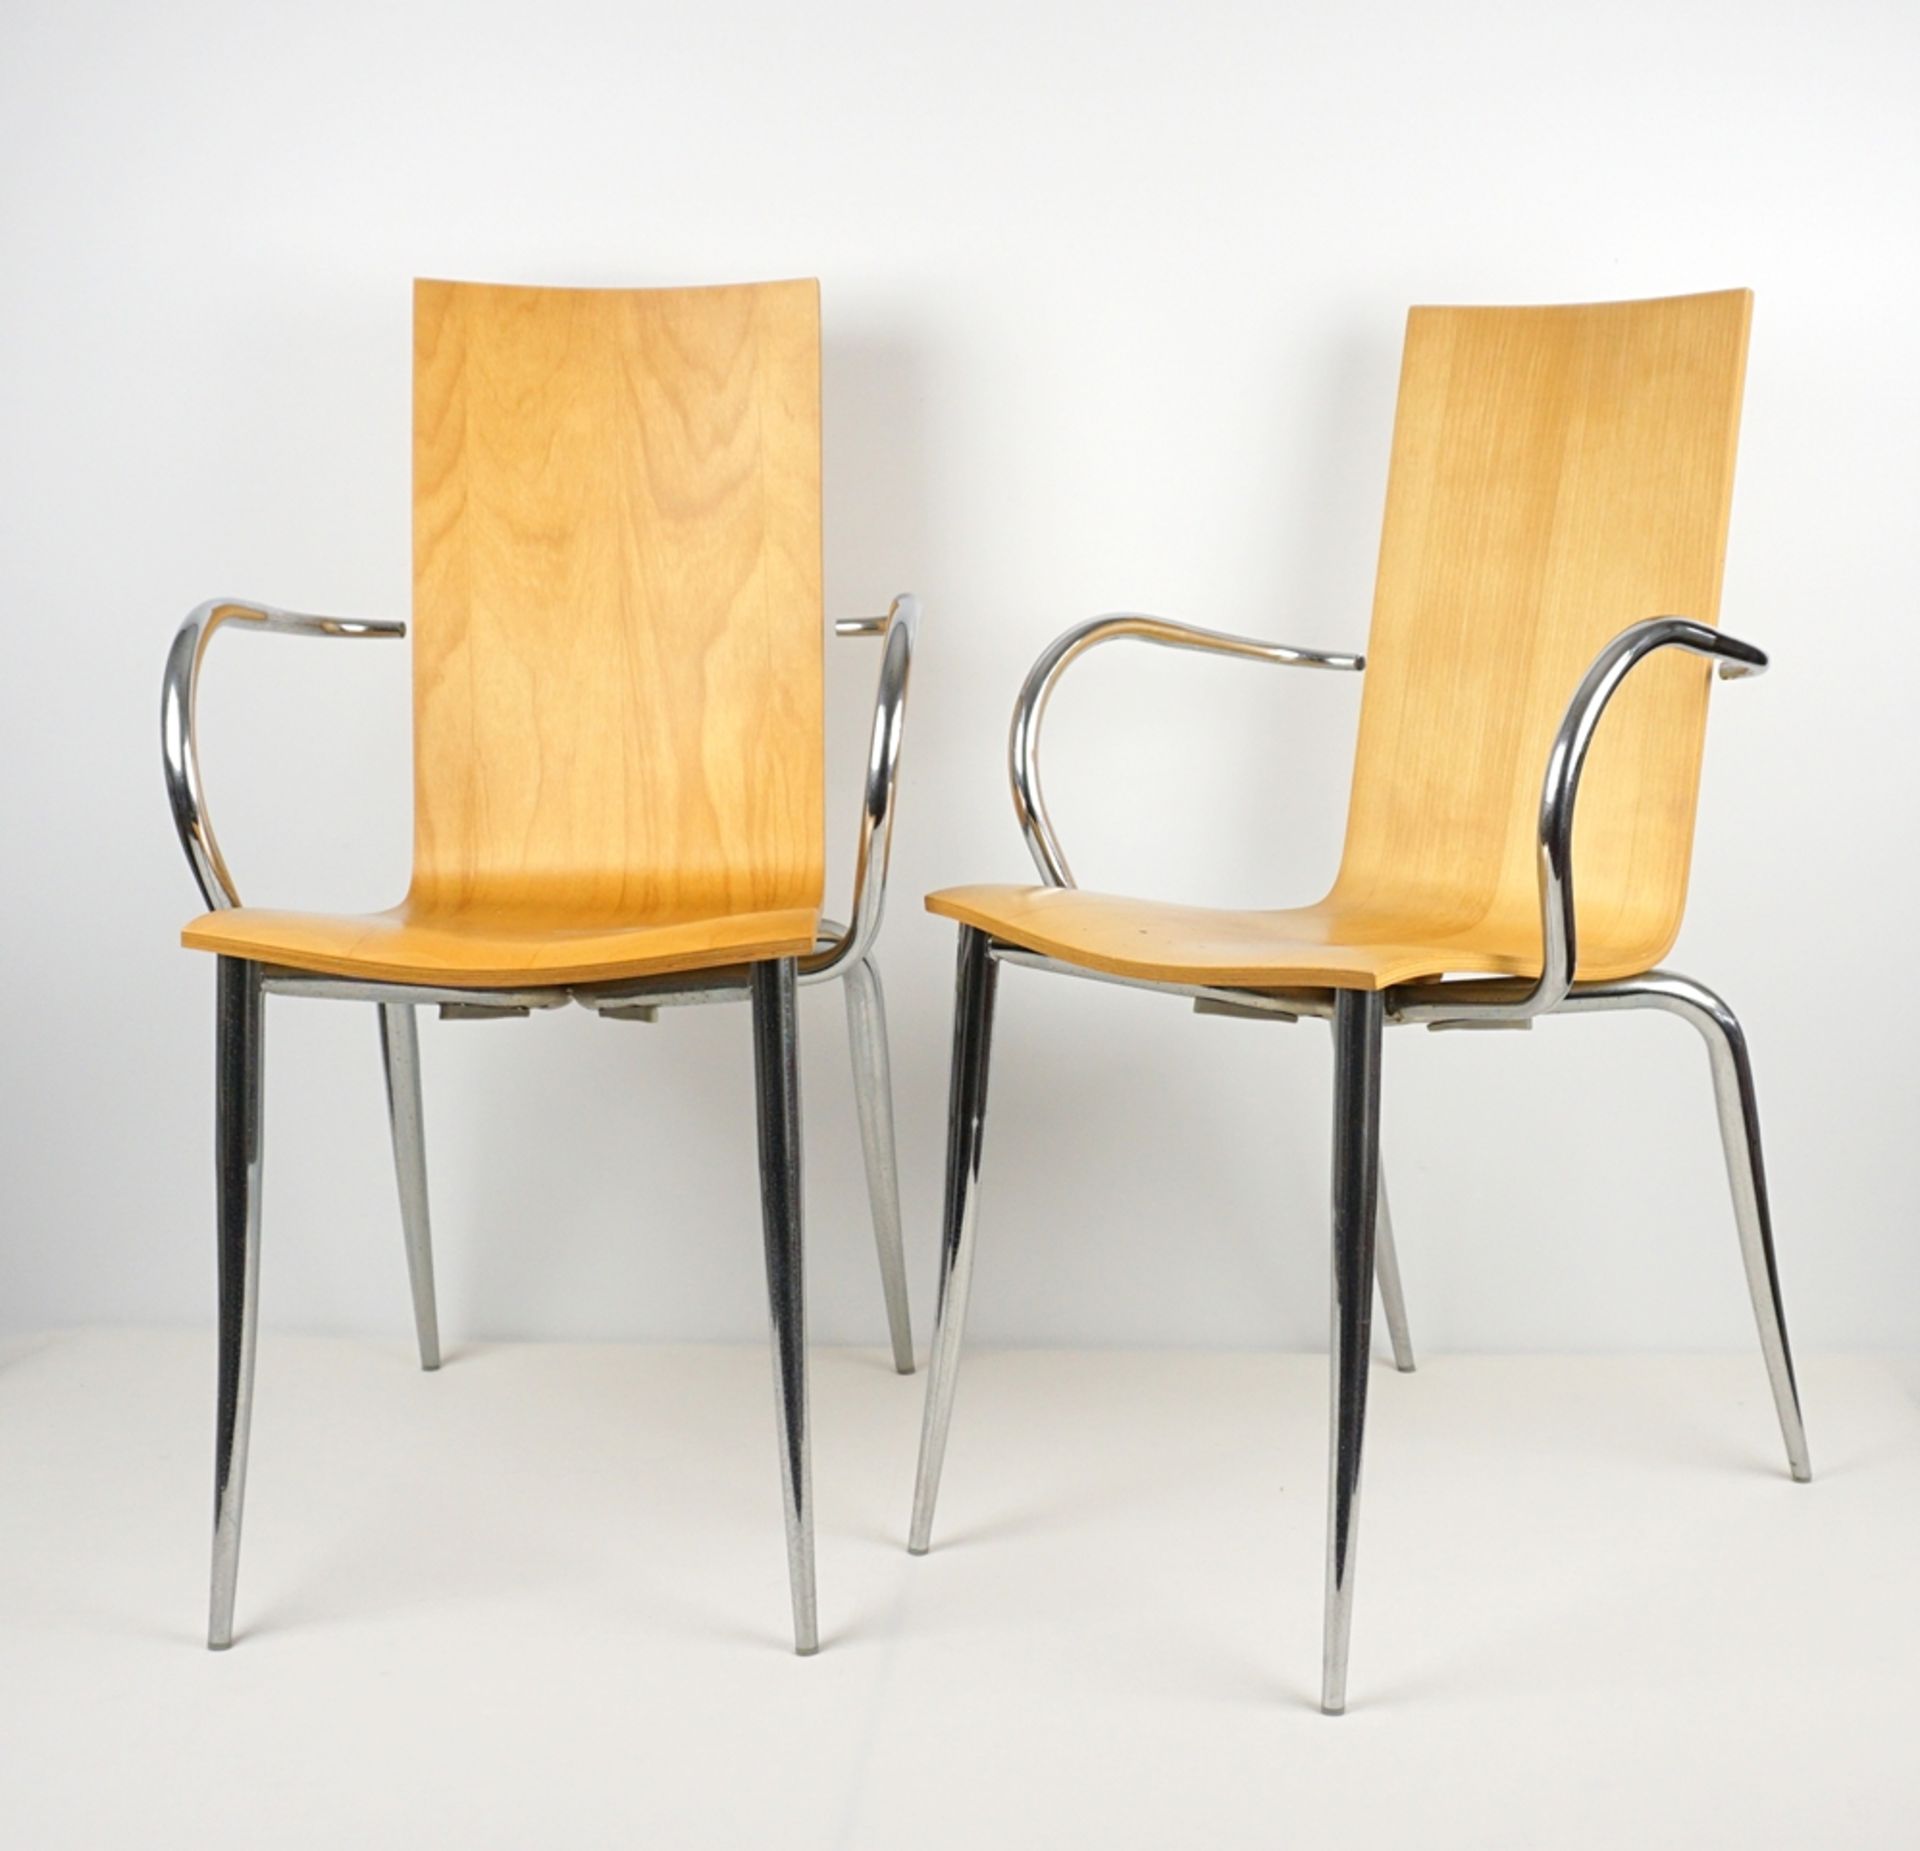 Paar Armlehnstühle "Olly Tango", Design von Philippe Starck für Driade, 1990 bis 1999